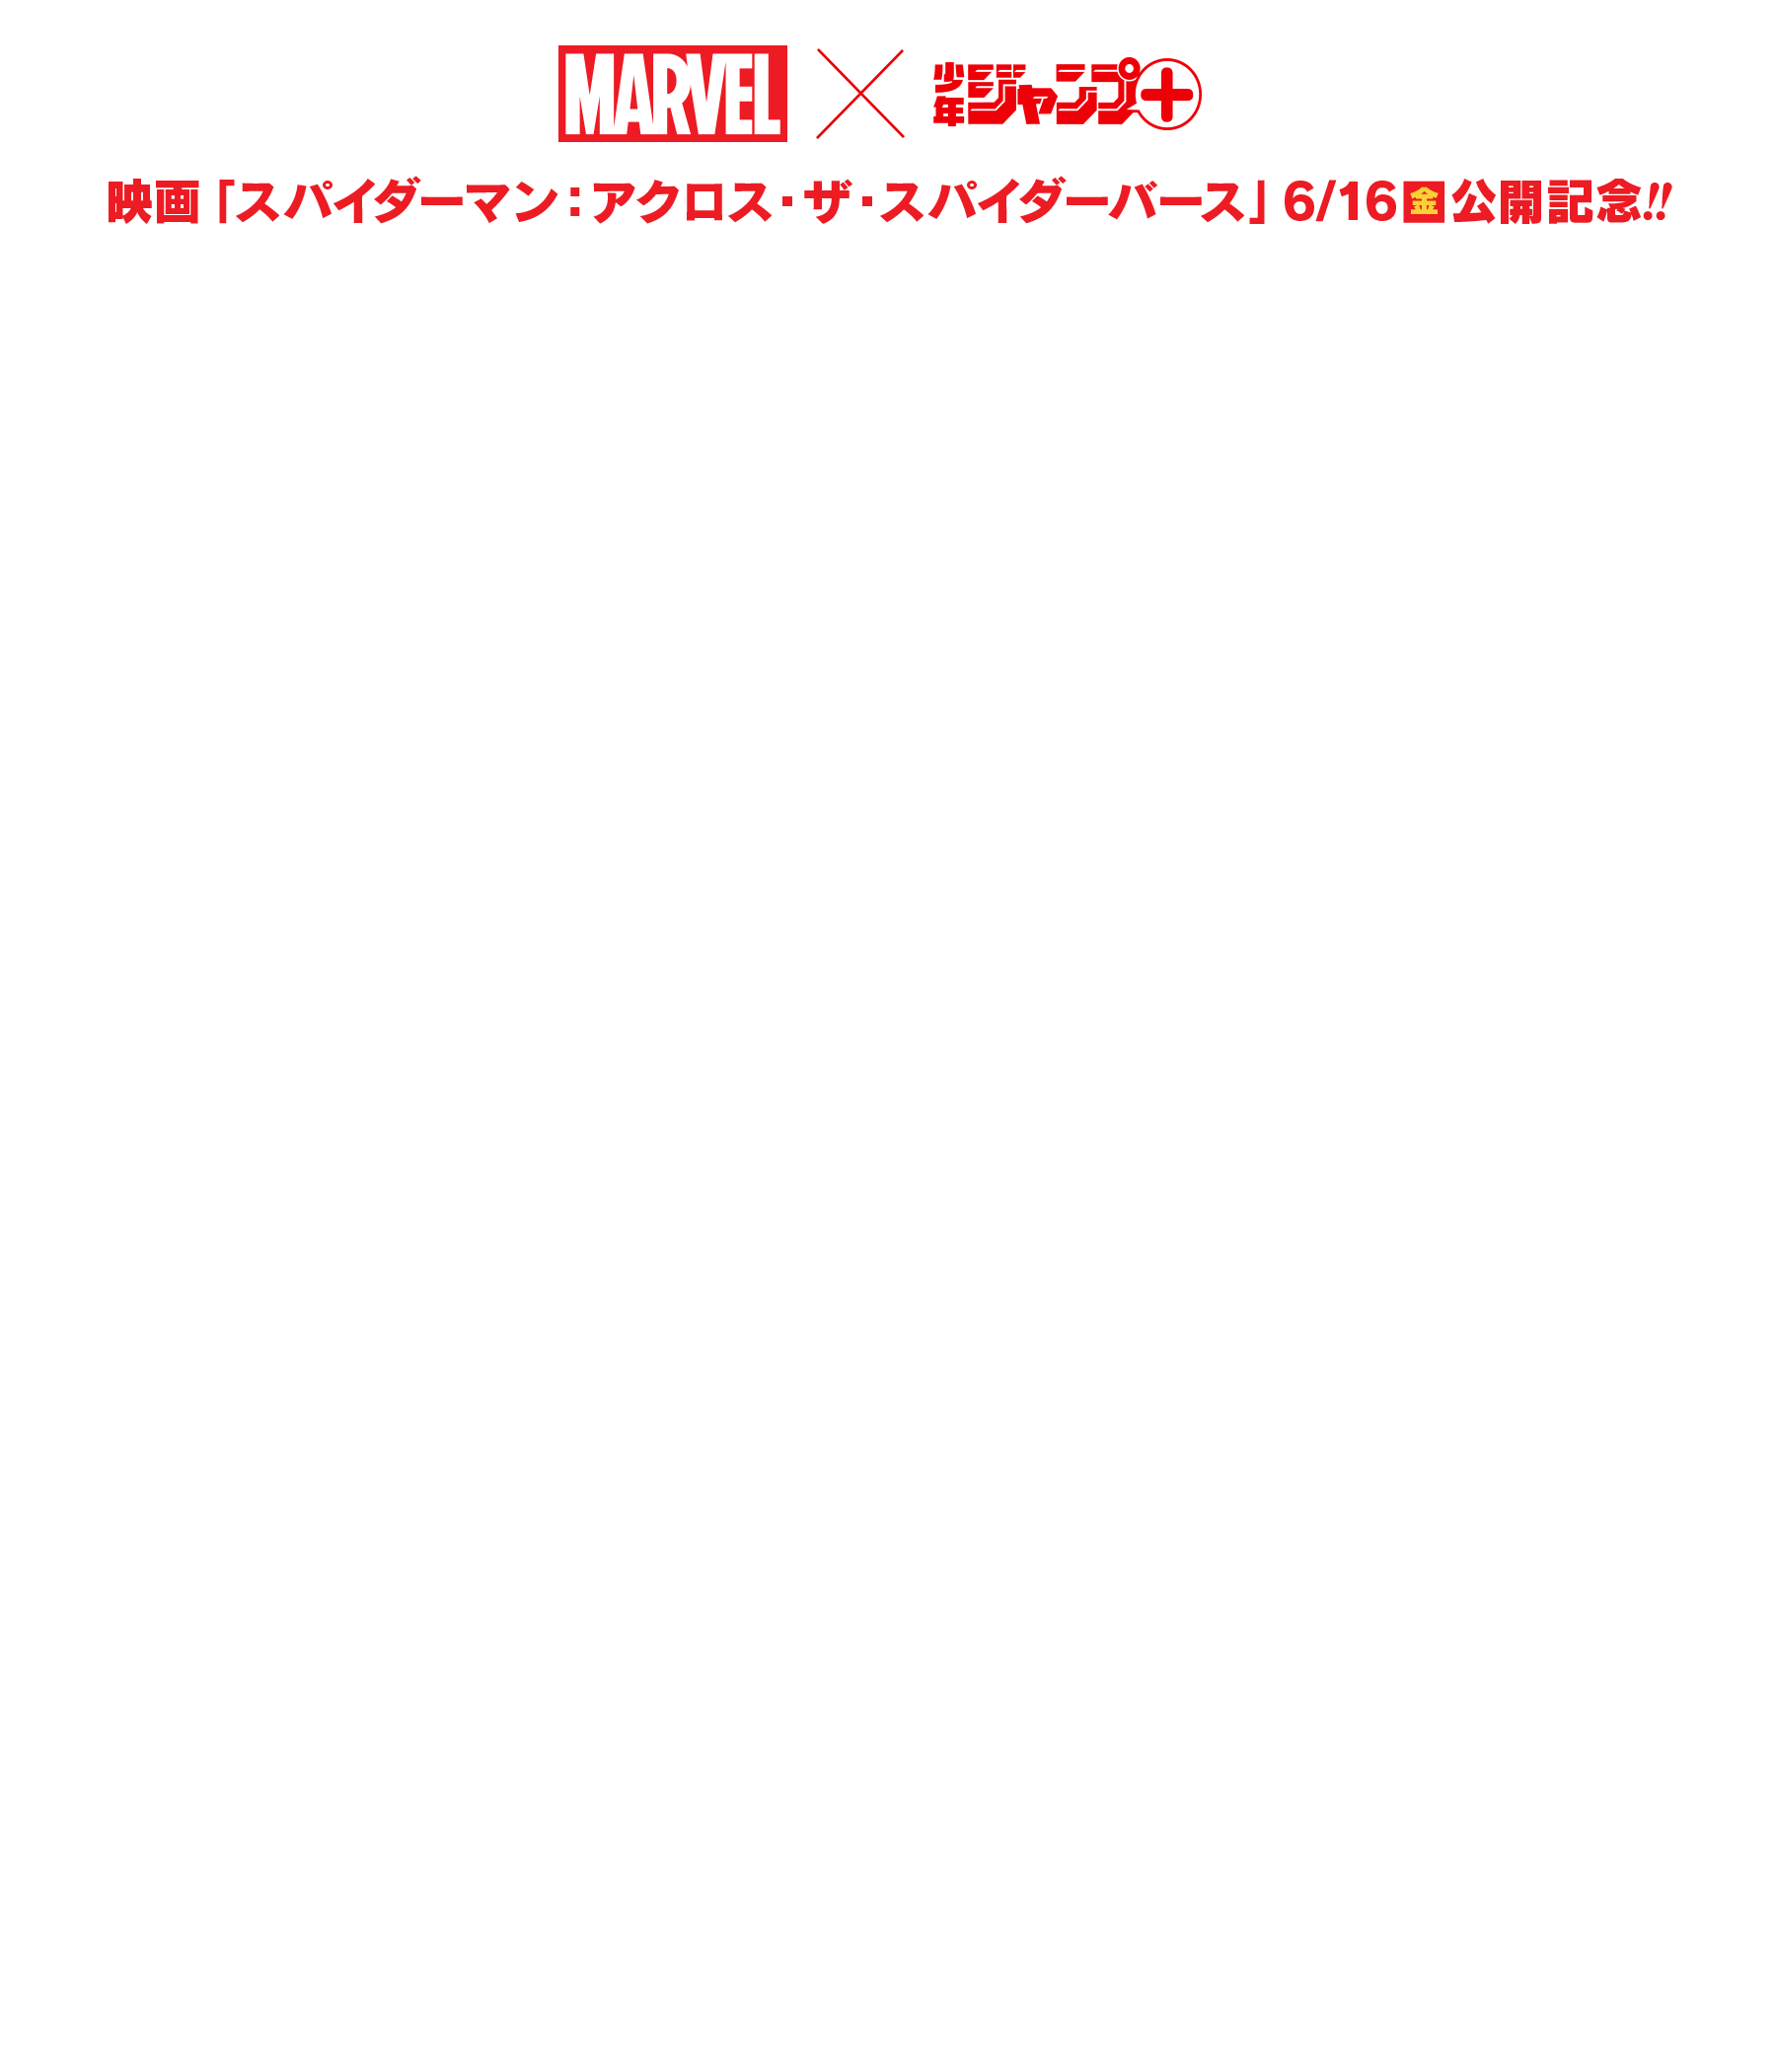 映画「スパイダーマン:アクロス・ザ・スパイダーバース」6/16(金) 公開!!